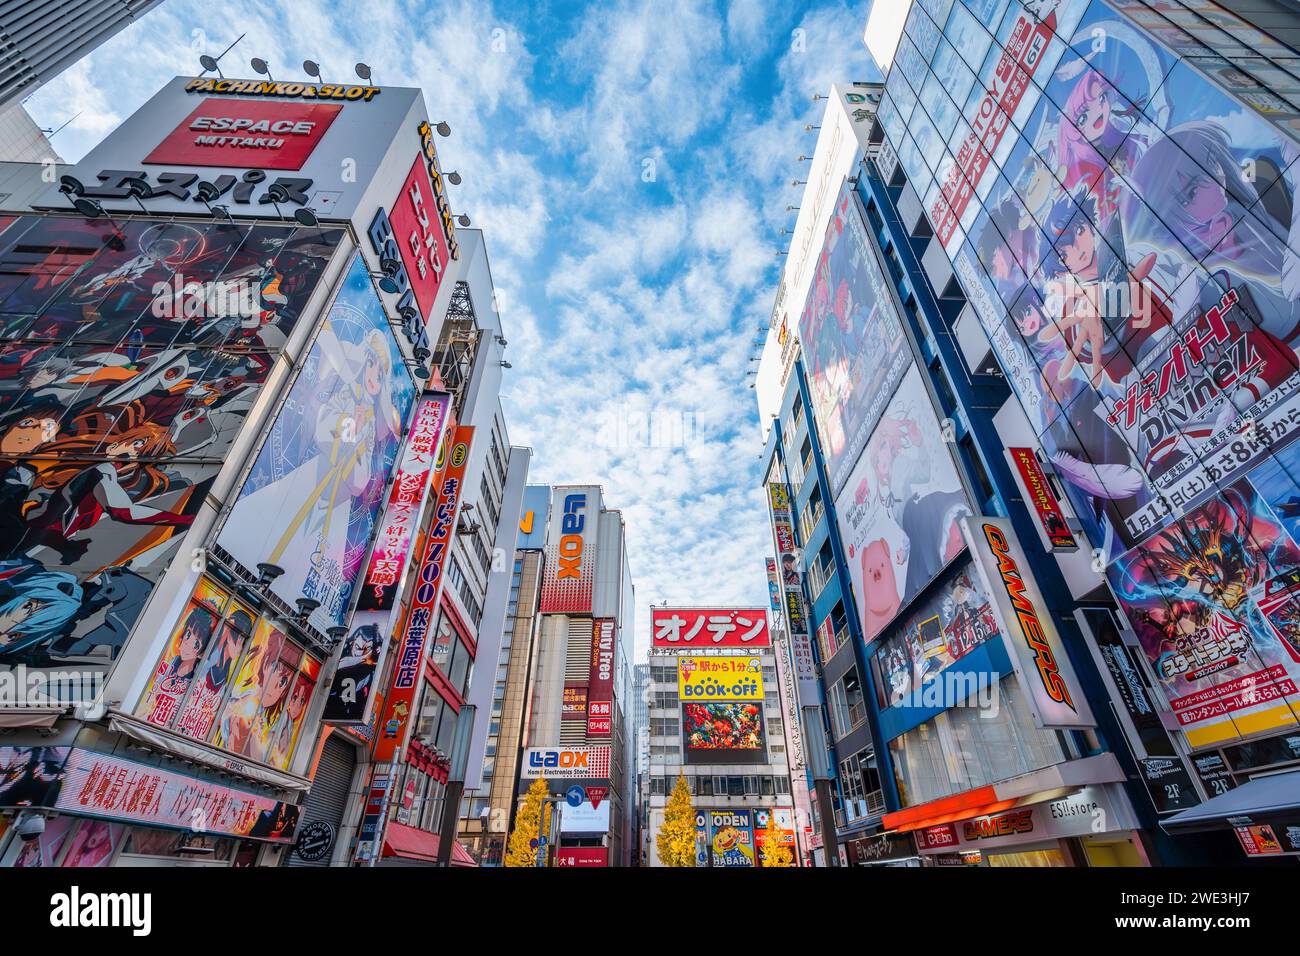 Farbenfrohe Schilder und Plakatwände in Akihabara, Tokio, Japan. Akihabara ist ein Einkaufsviertel, das für seine Anime-, Manga-, Videospiel- und Computerläden berühmt ist. Stockfoto